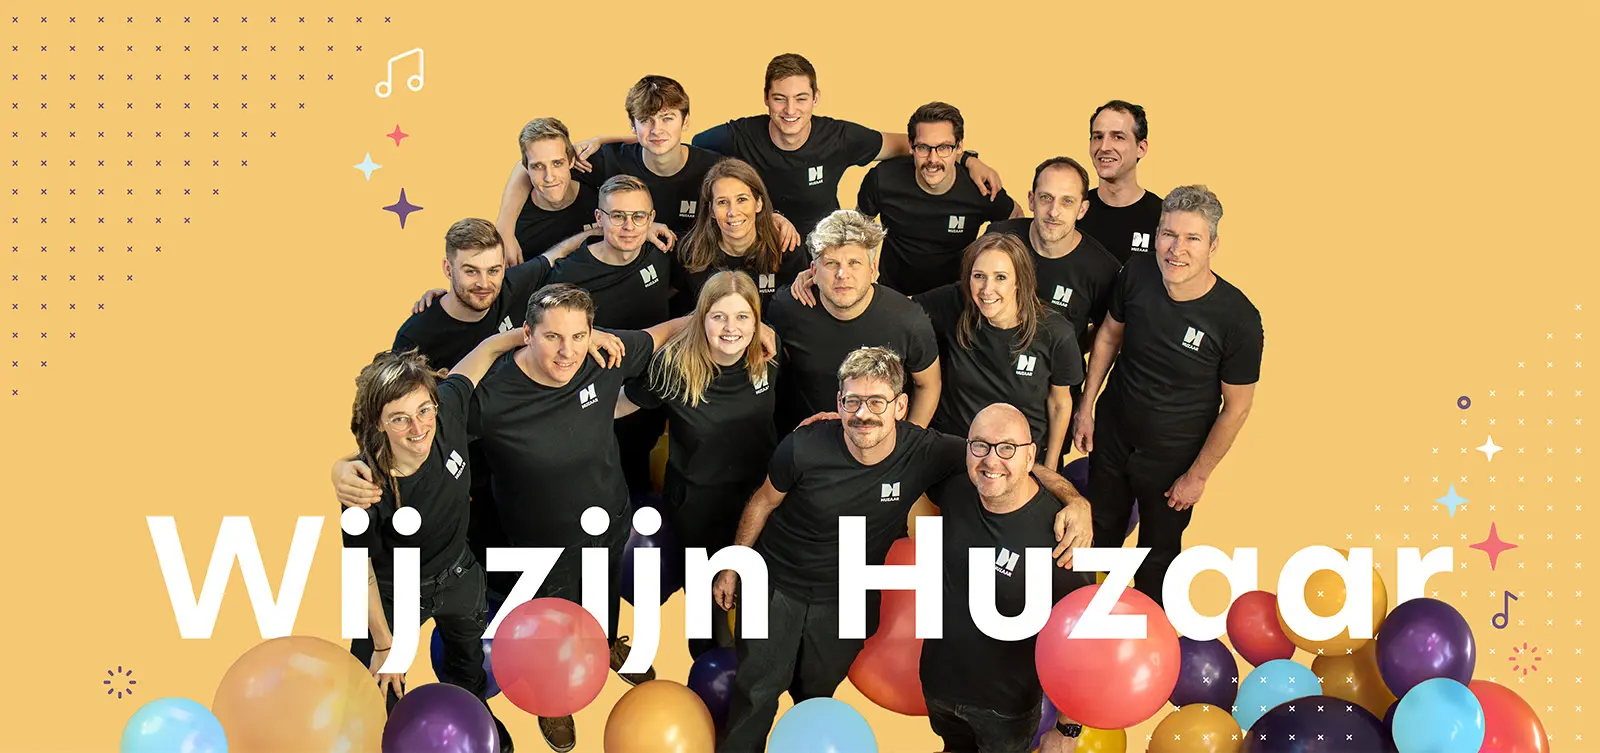 Wij zijn Huzaar - een foto van het Huzaar team